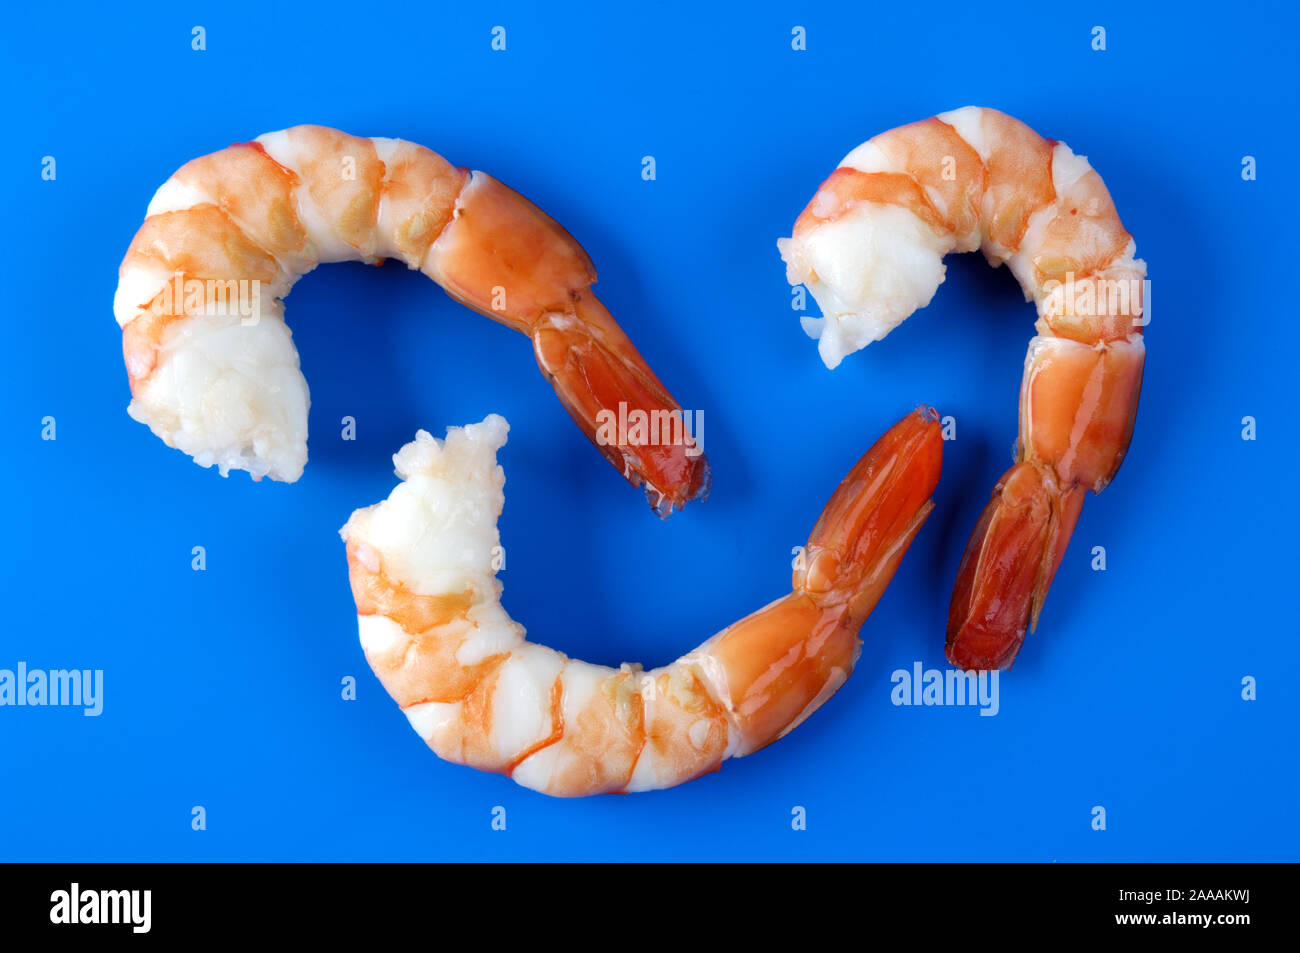 King prawn, shrimp, prawn / (Natantia)